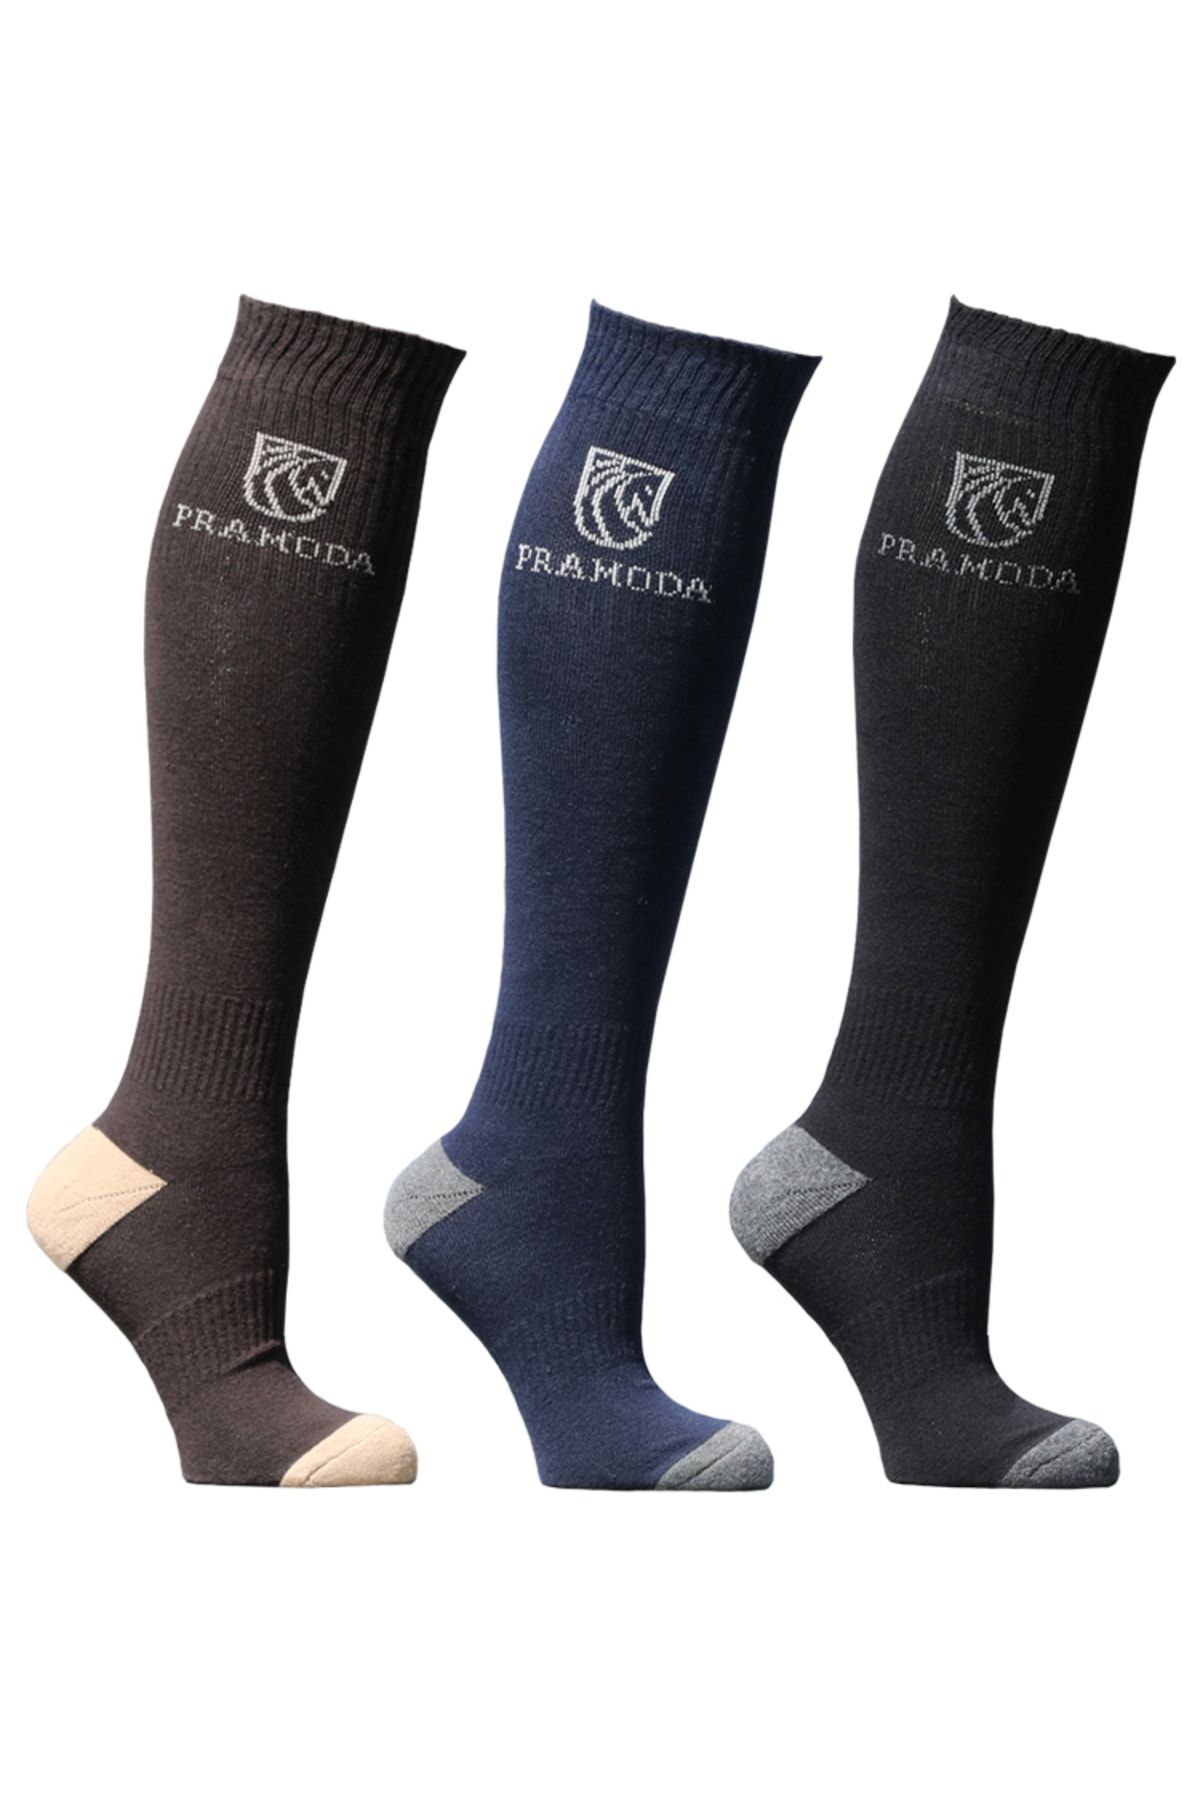 Pramoda Binici Çorabı 3'lü Paket (kahverengi-siyah-lacivert)